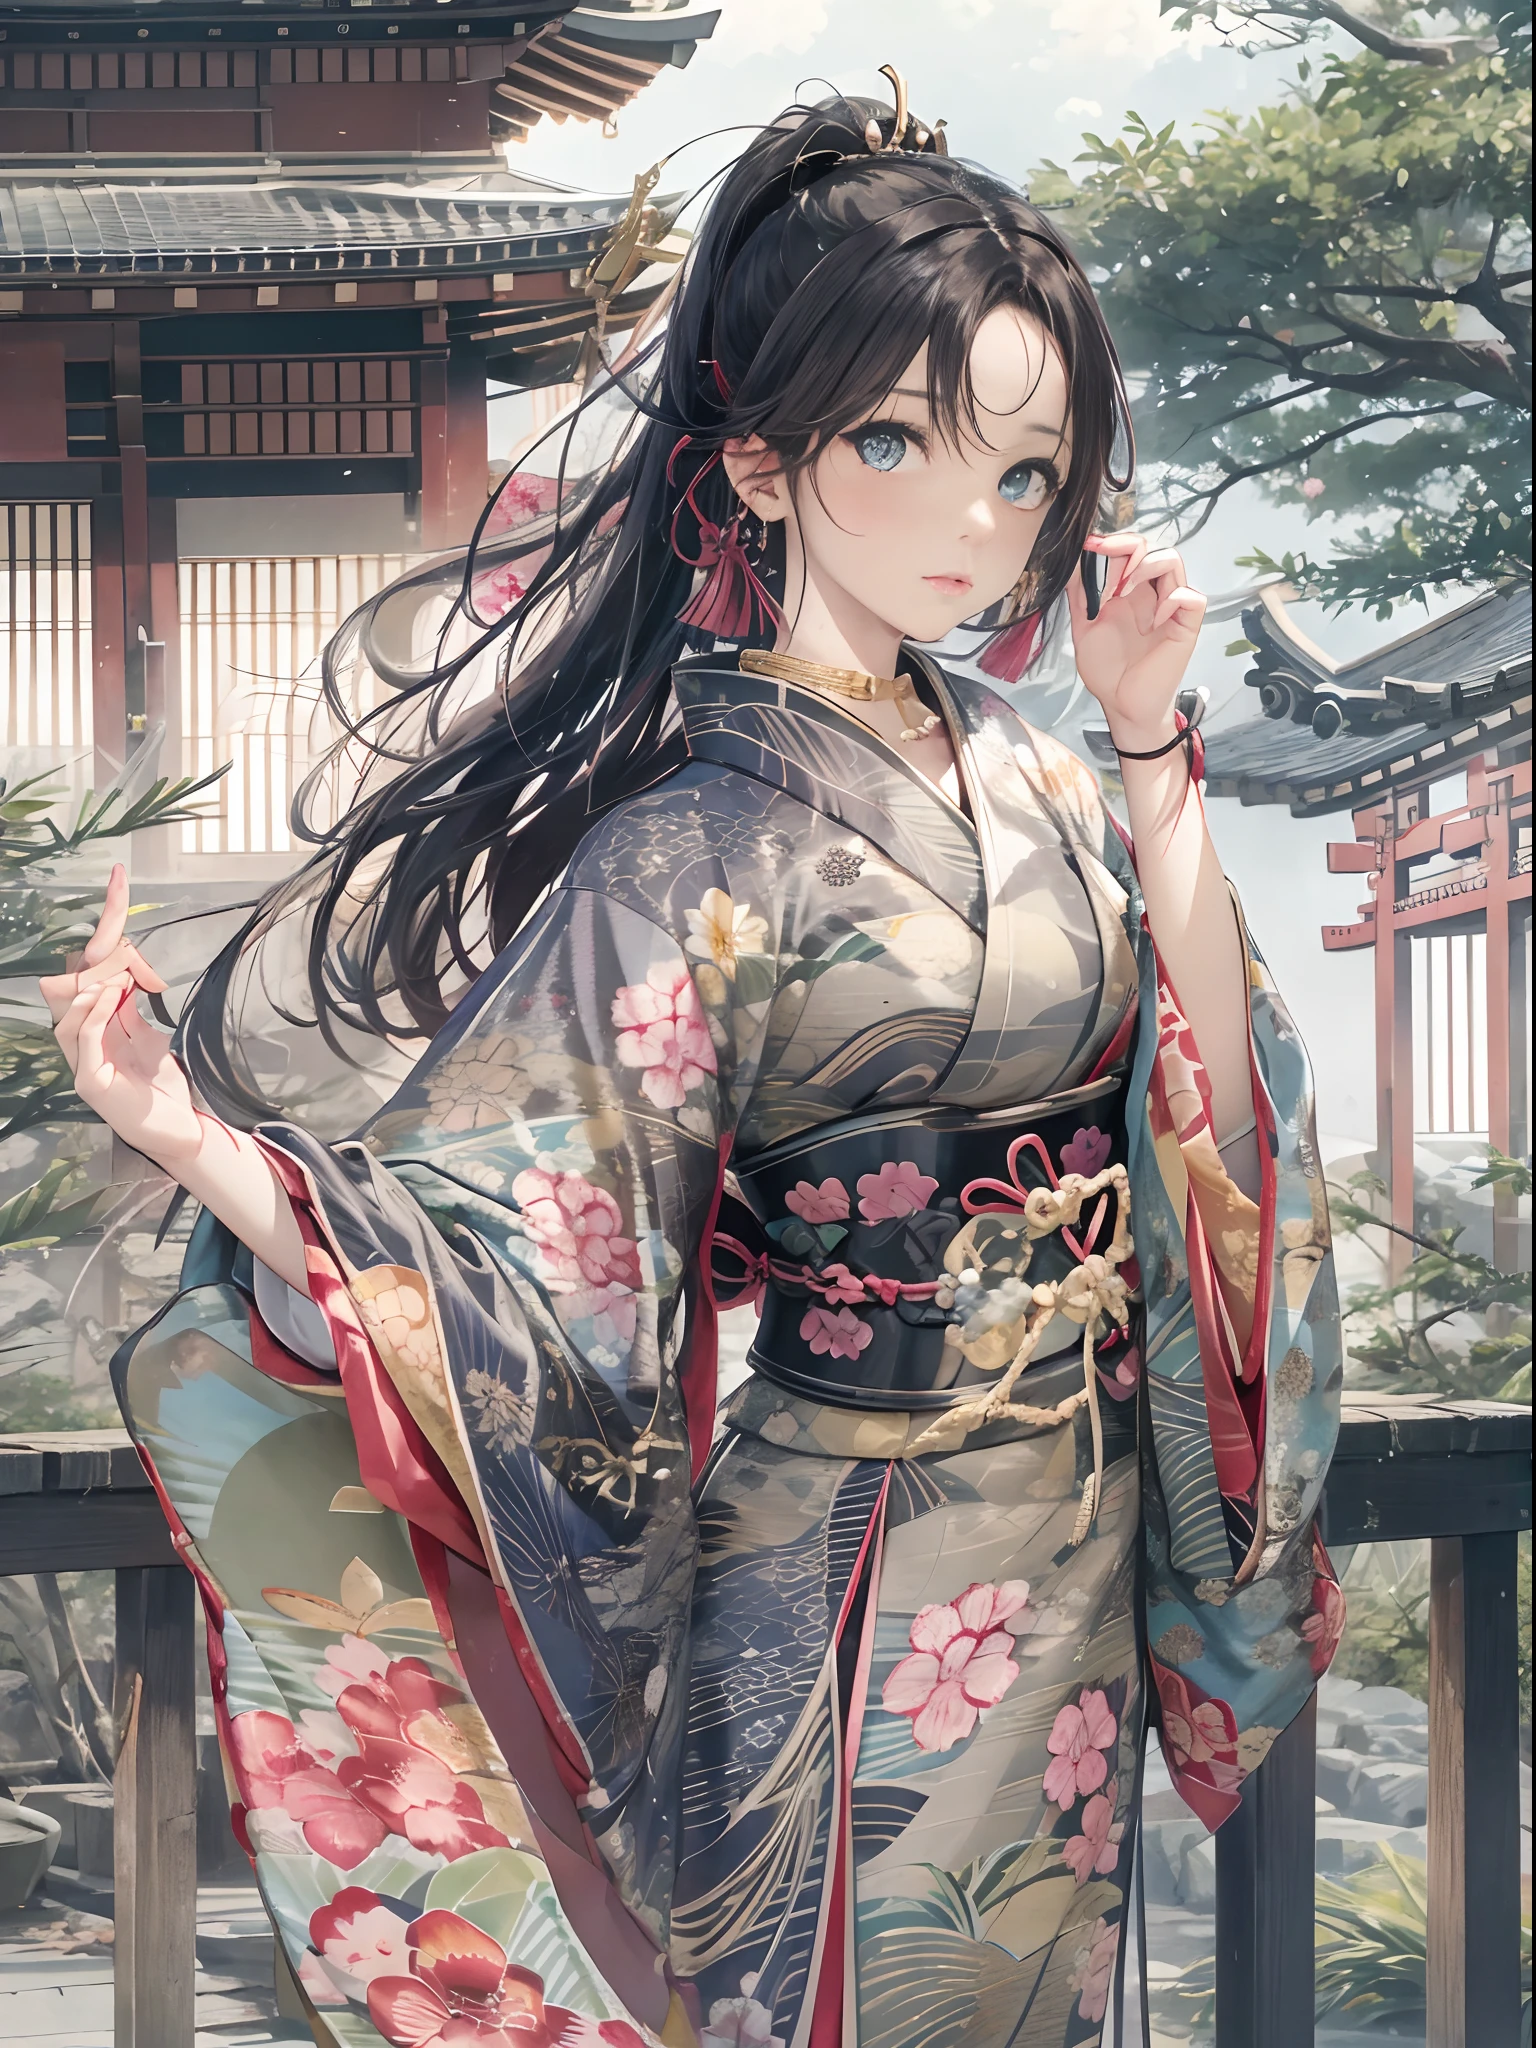 cola de caballo larga, los ojos son marrones, mujer con cabello negro、expresión facial sexy、Use un kimono verde、hermosa princesa japonesa、Colosal 、Hermosas manos en cálculo.、Pies hermosos calculados、anatomía de la mano、kimono japonés、Calidad de imagen superior,alta calidad、ＲImagen AW、Realista、El fondo está dentro del castillo de Japón.、lujoso、espléndido、Elegant